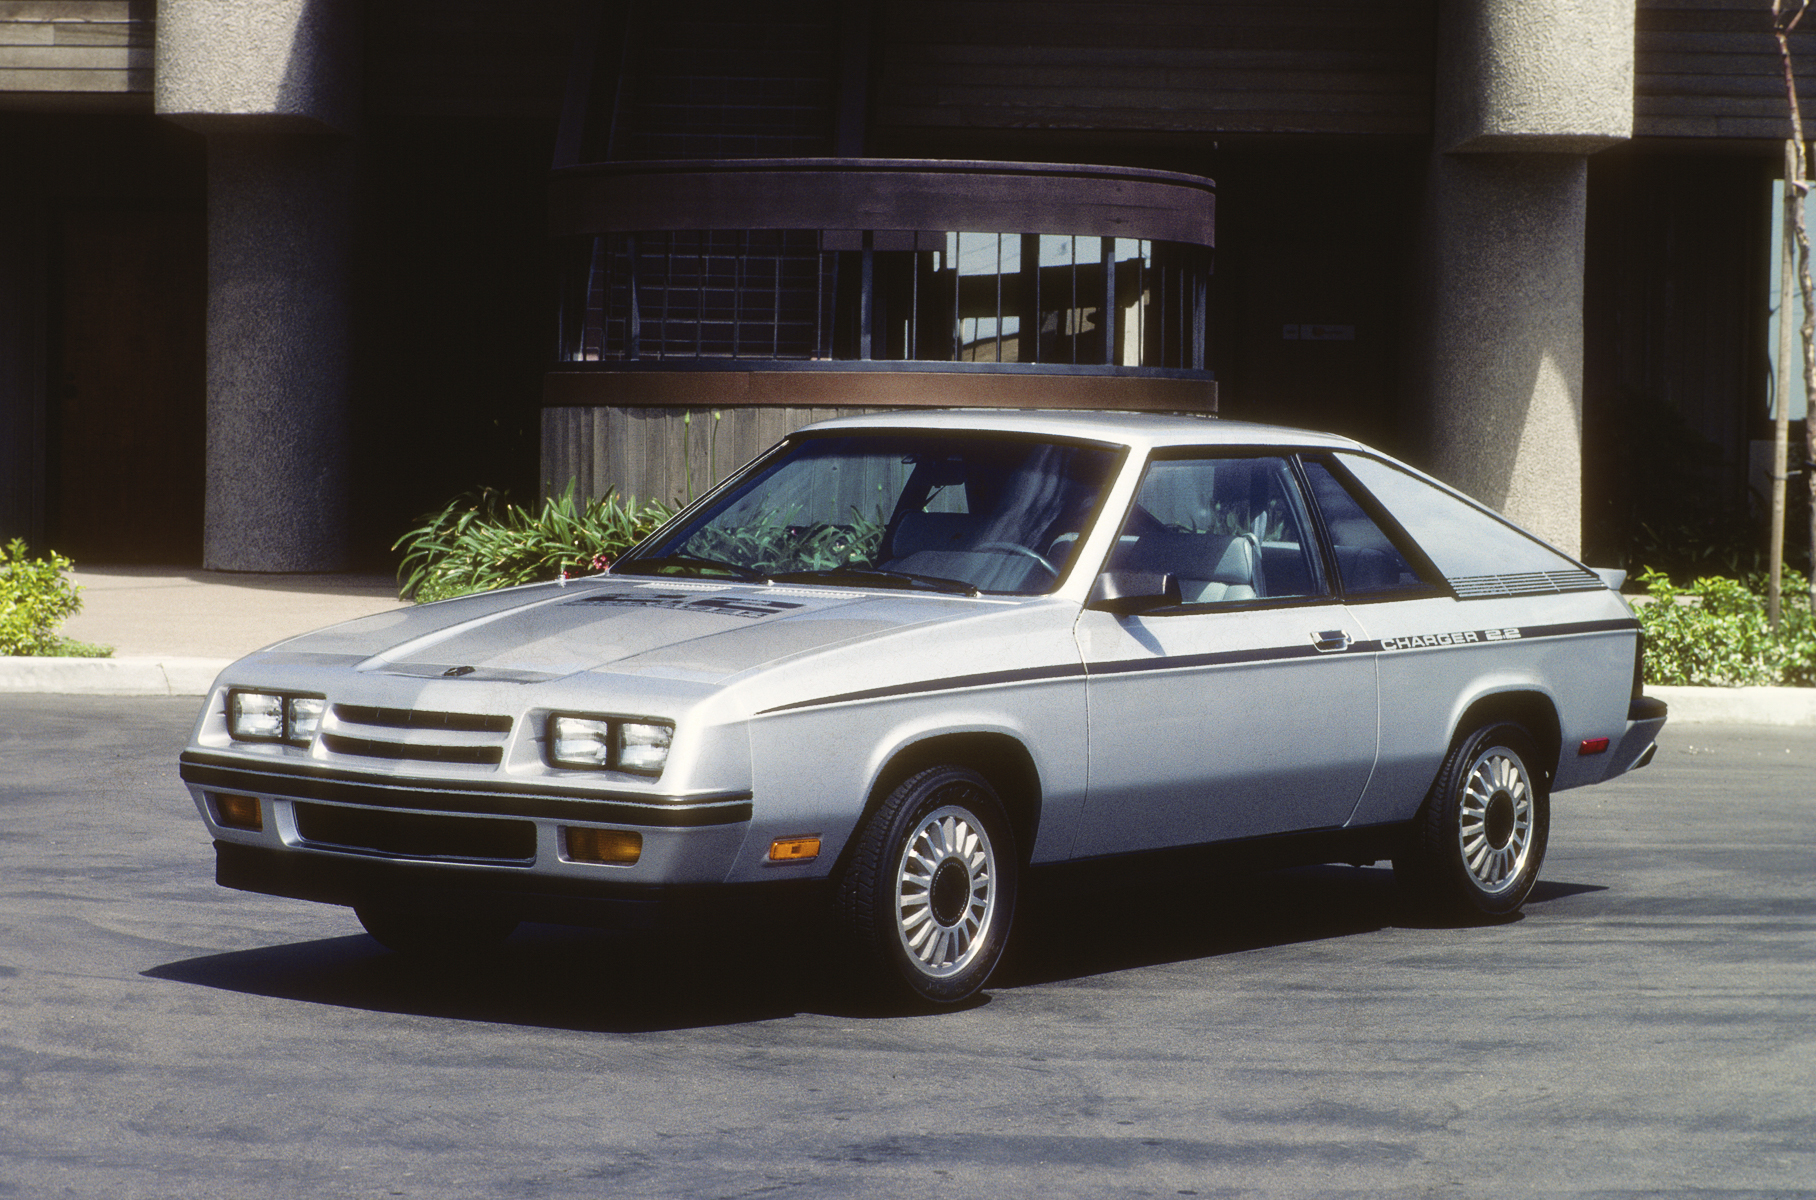 Сперва он был «спортивной» вариацией Dodge Omni 024 c 2,2-литровым атмосферником (84 л.с.). Несколько лет спустя всю линейку окрестили Charger.